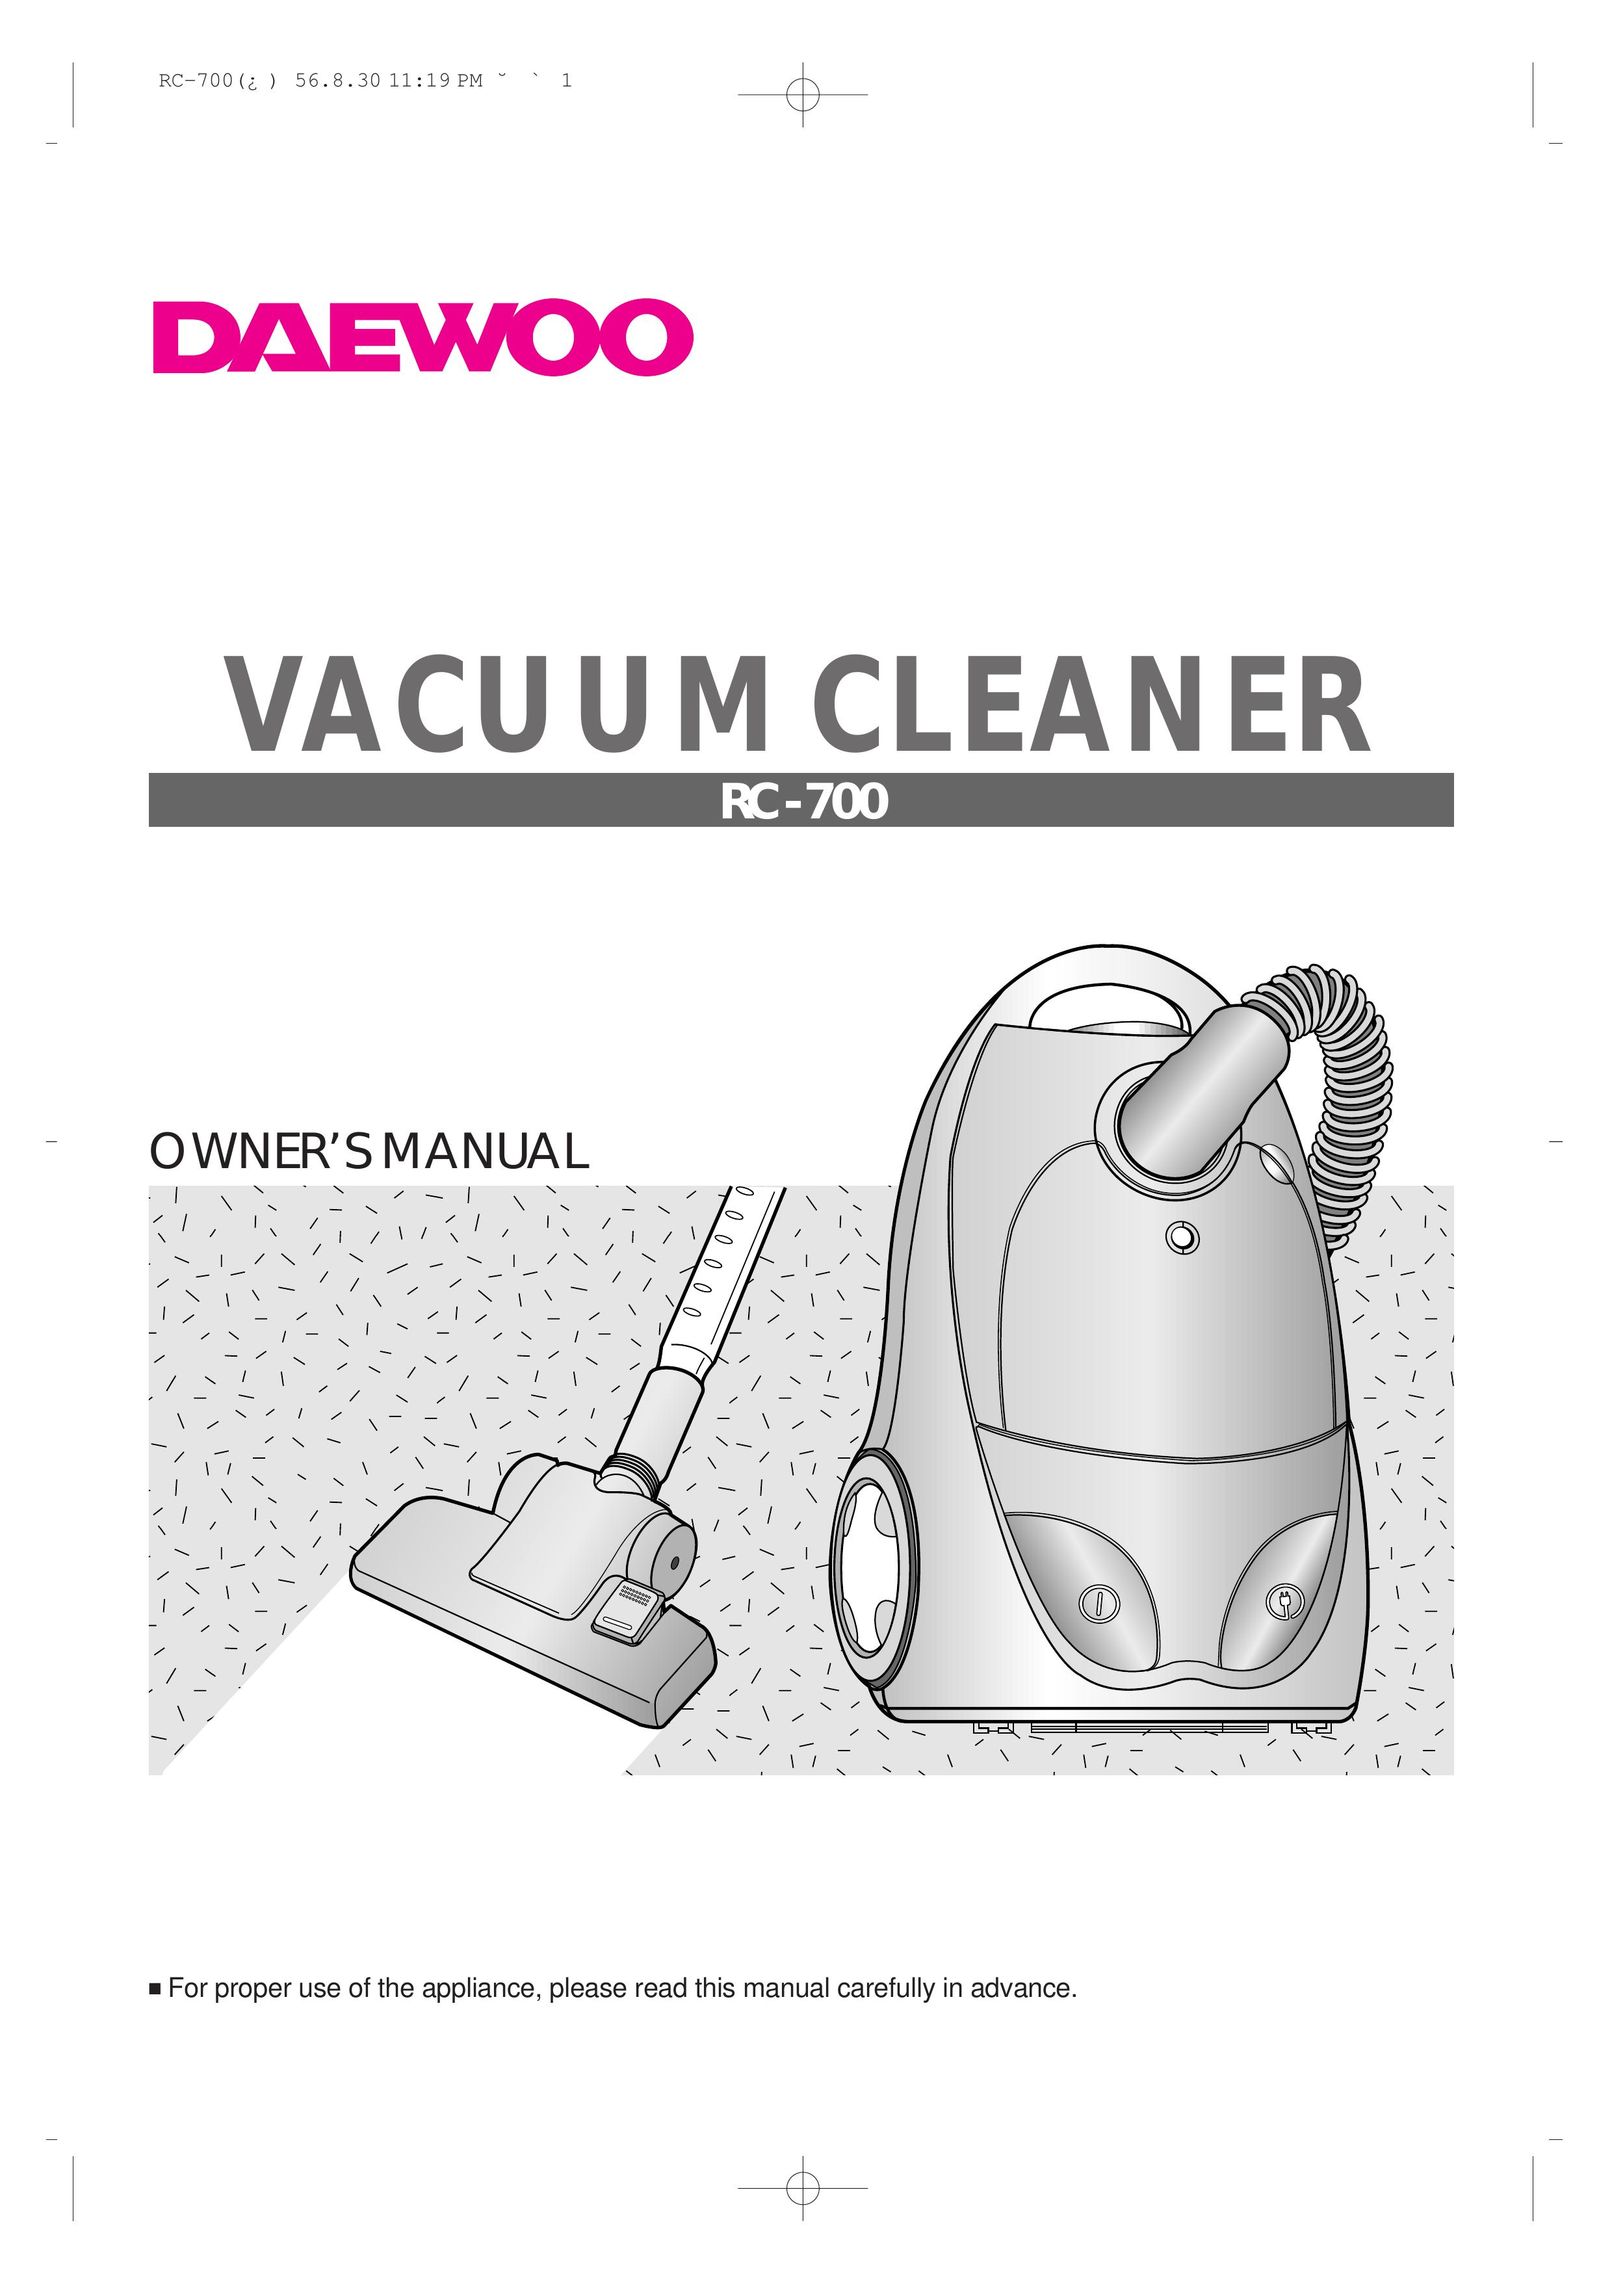 Daewoo RC-700 Vacuum Cleaner User Manual